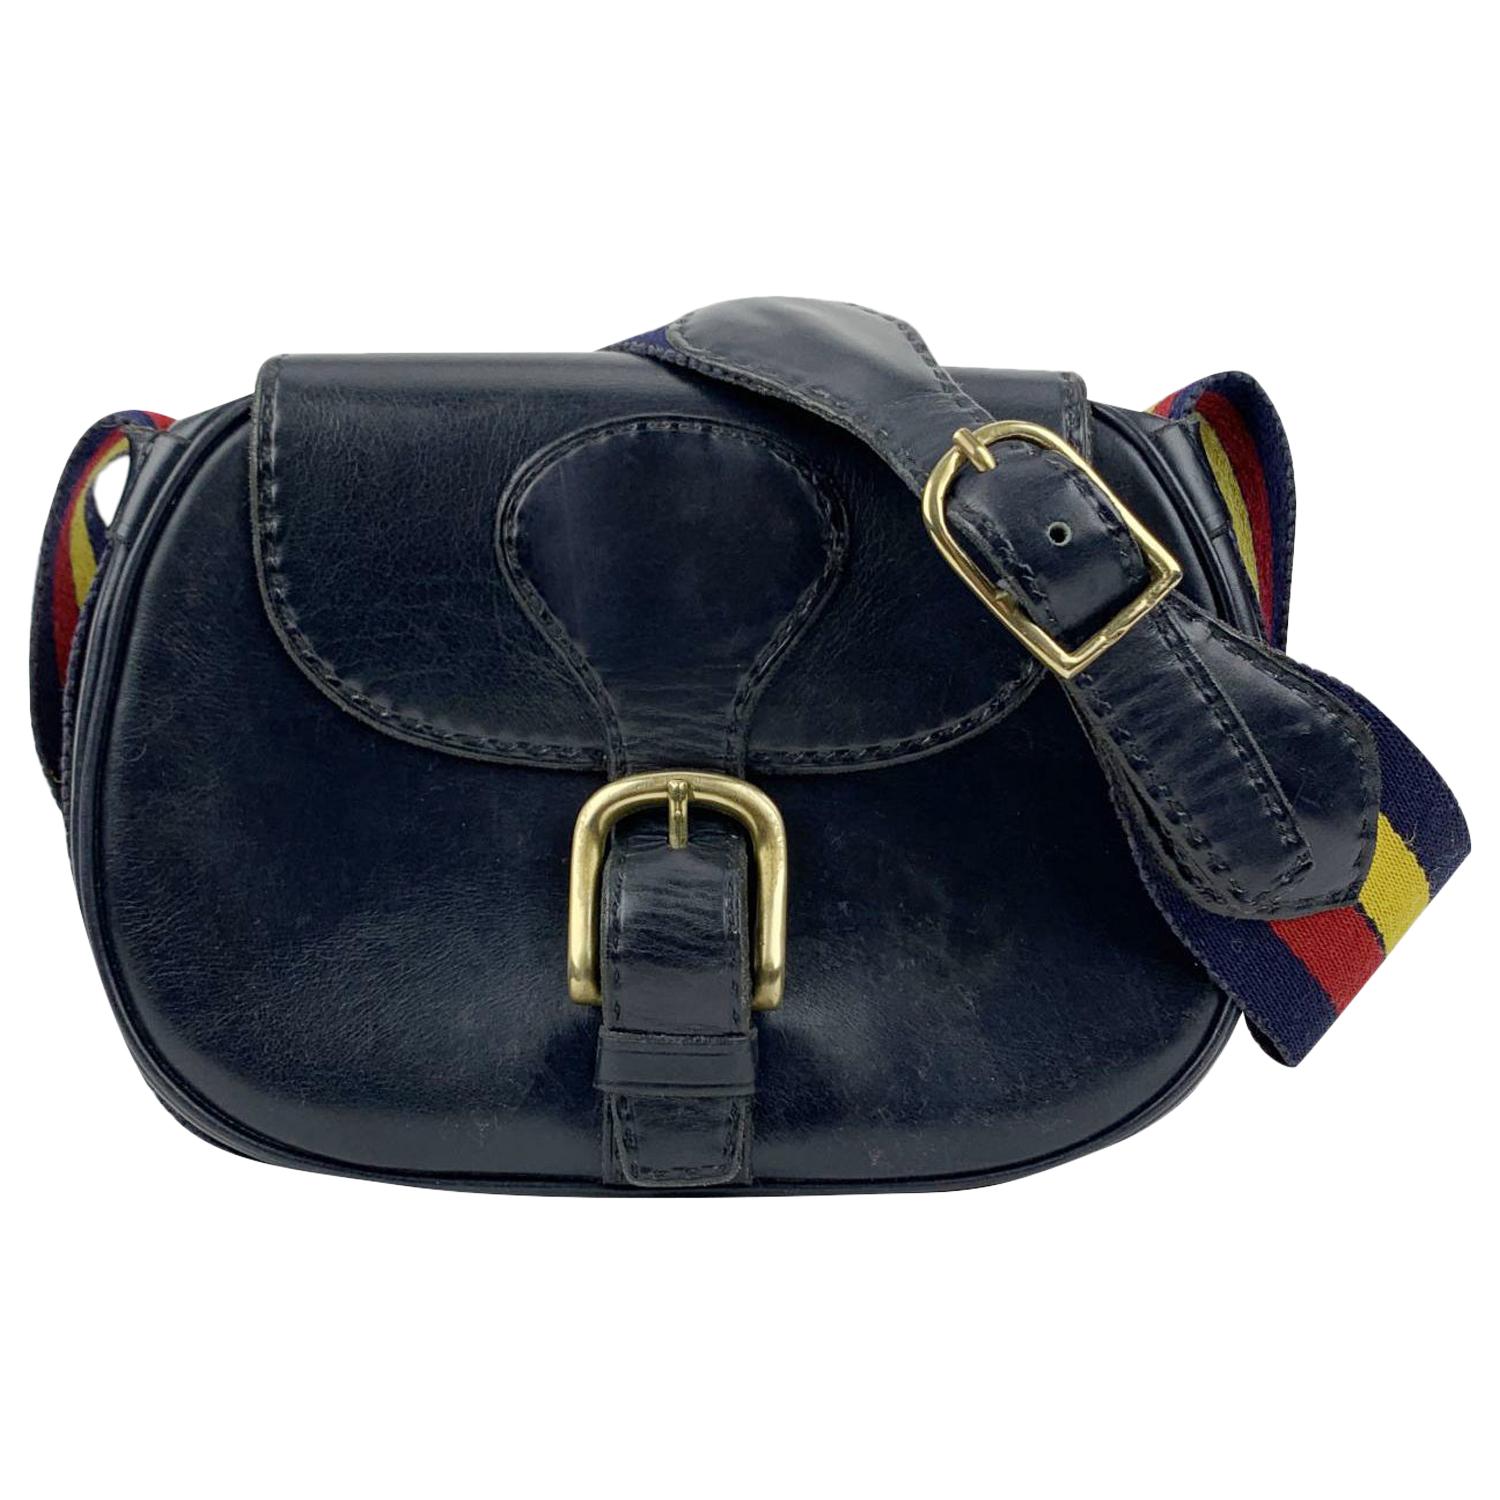 Saddler Purses & Handbags — www.addabow.com